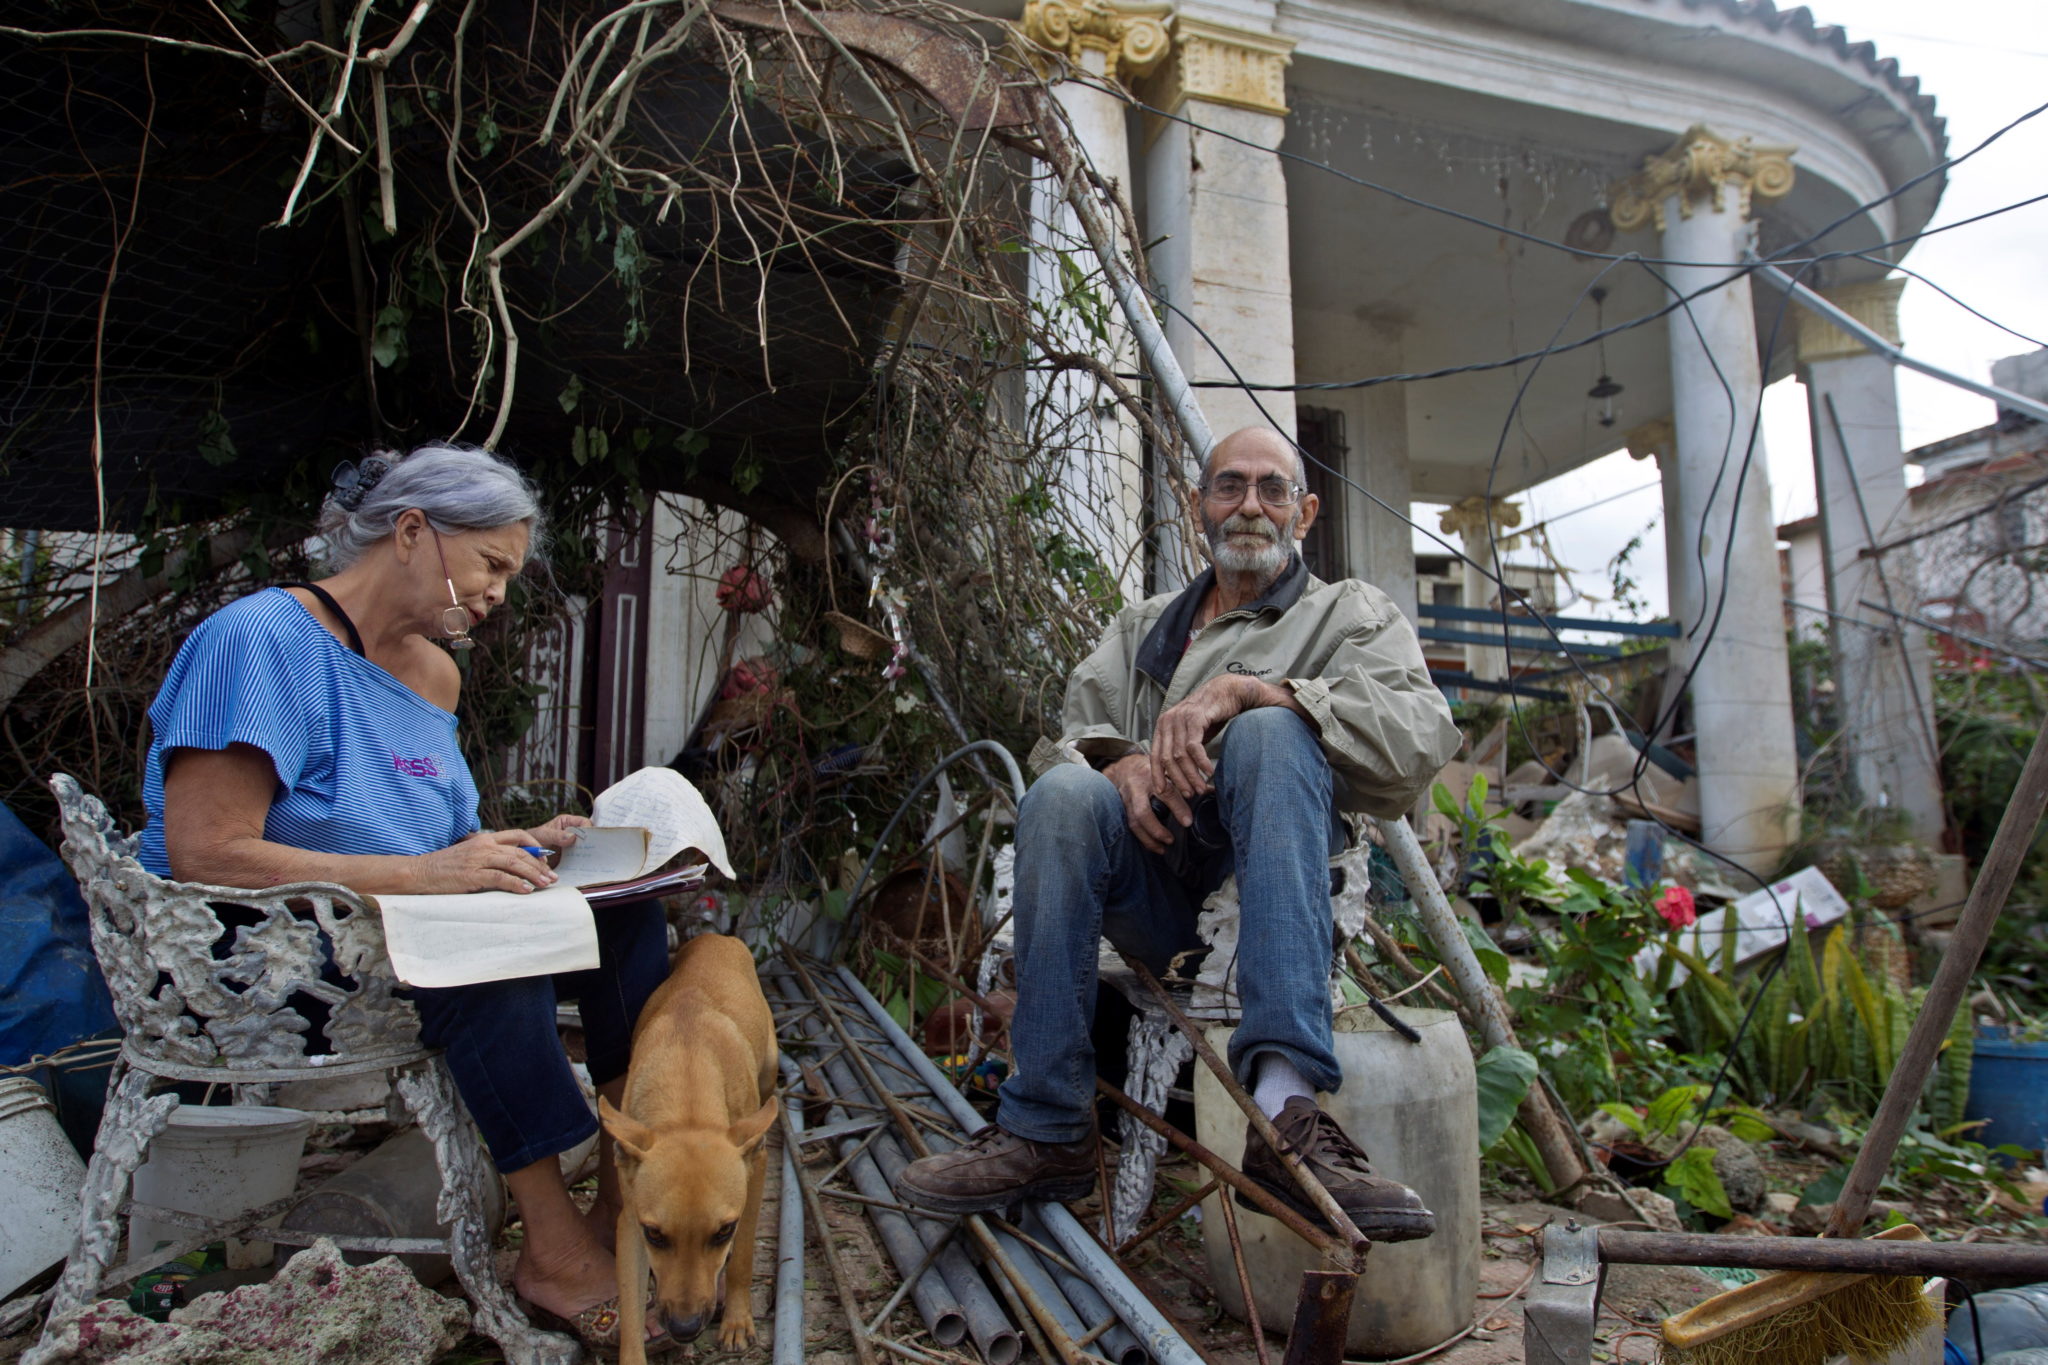 Potężne tornado nawiedziło Kubę, zginęły co najmniej trzy osoby, a ponad 170 zostało rannych - poinformował na Twitterze prezydent Kuby Miguel Díaz-Canel. To było pierwsze od dziesięcioleci tornado, które uderzyło w stolicę Kuby, fot. Yander Zamora, PAP/EPA.